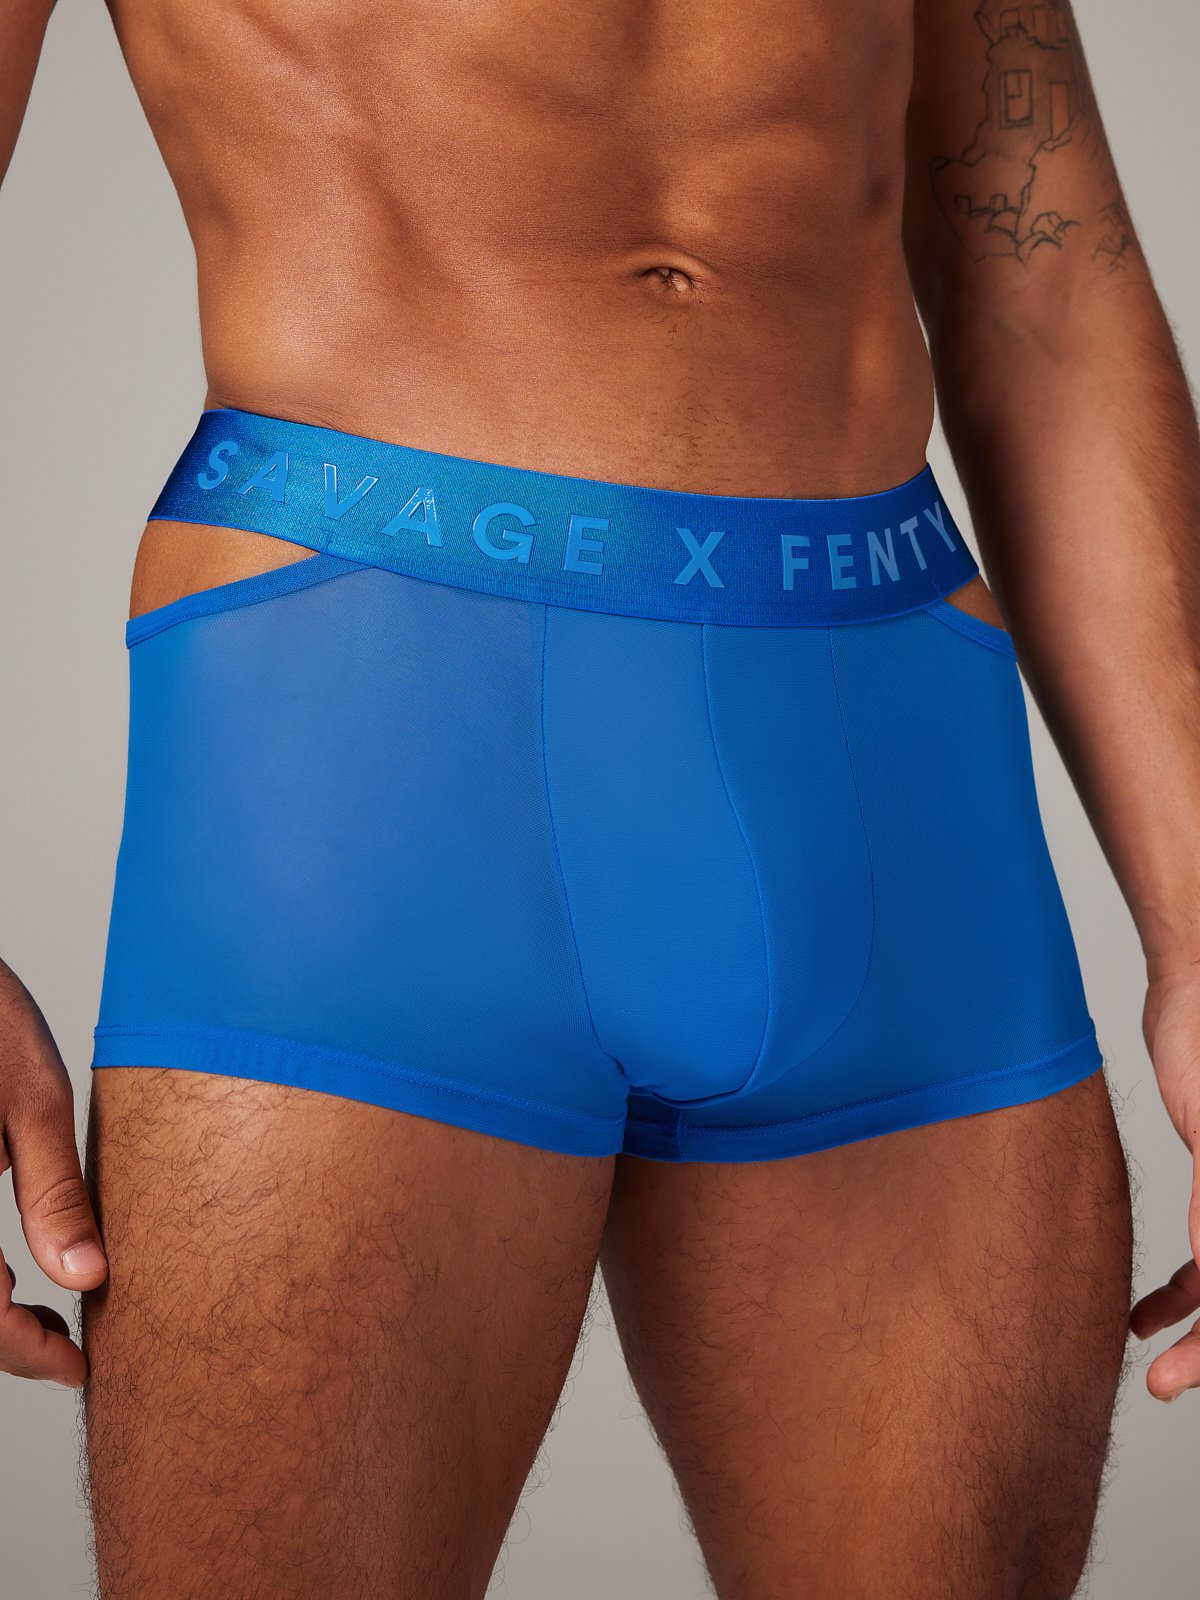 Savage X Fenty Mens Mesh Boxer Brief Underwear Blue Size S